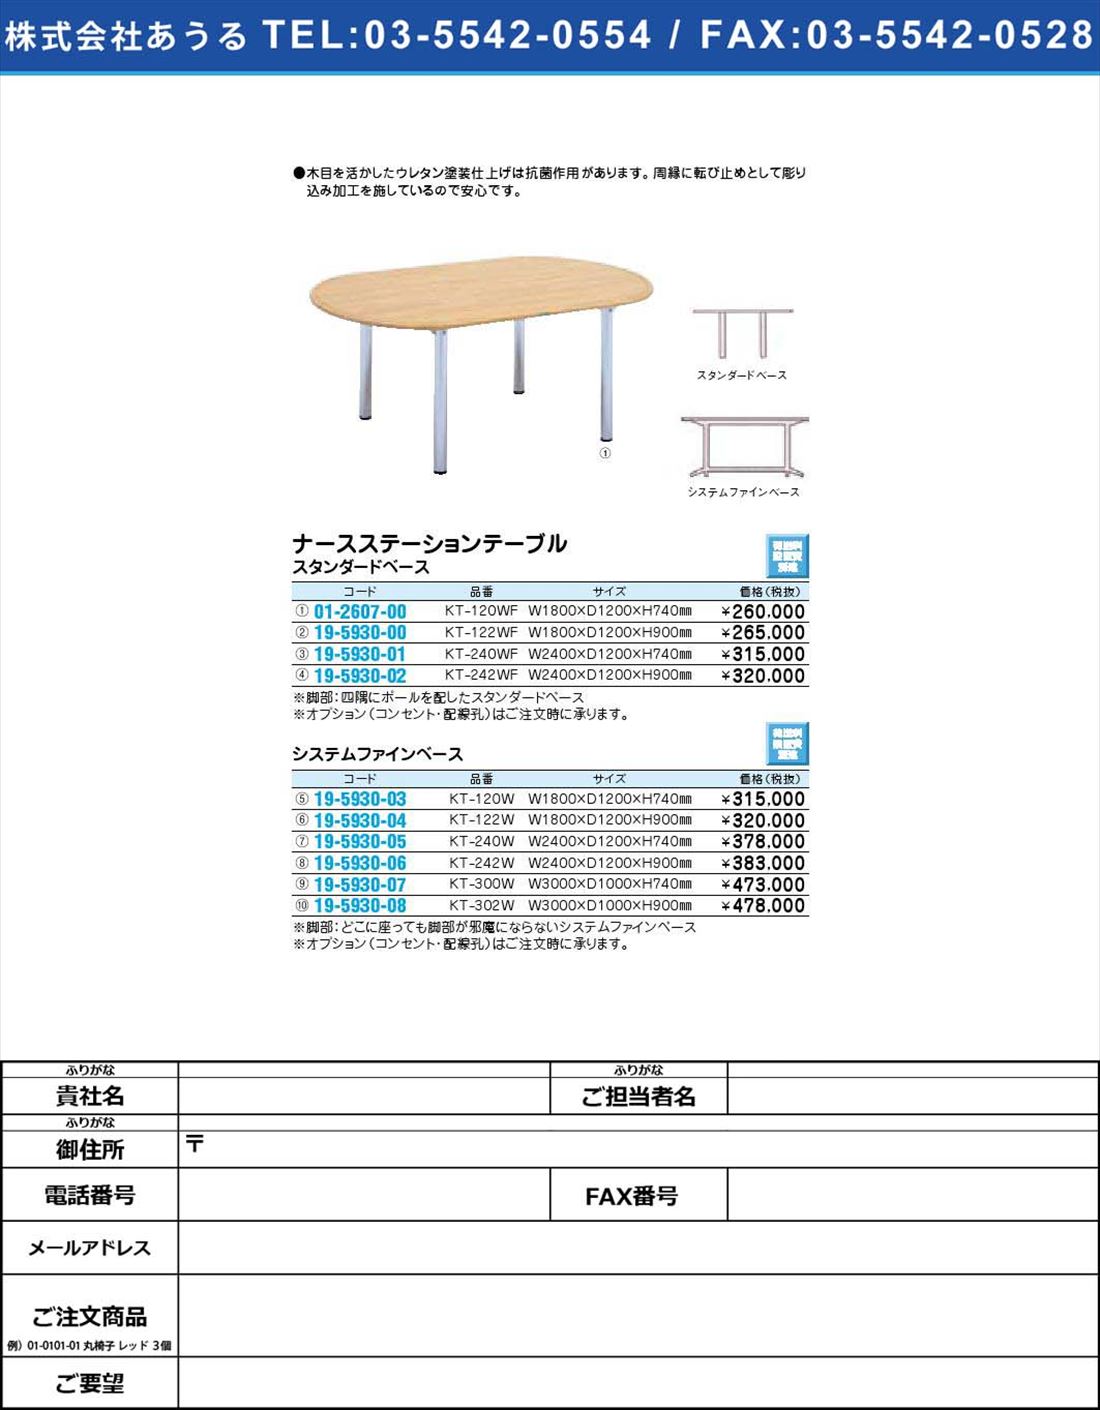 ナースステーションテーブル システムファインベースKT-240W(19-5930-05)【1個単位】